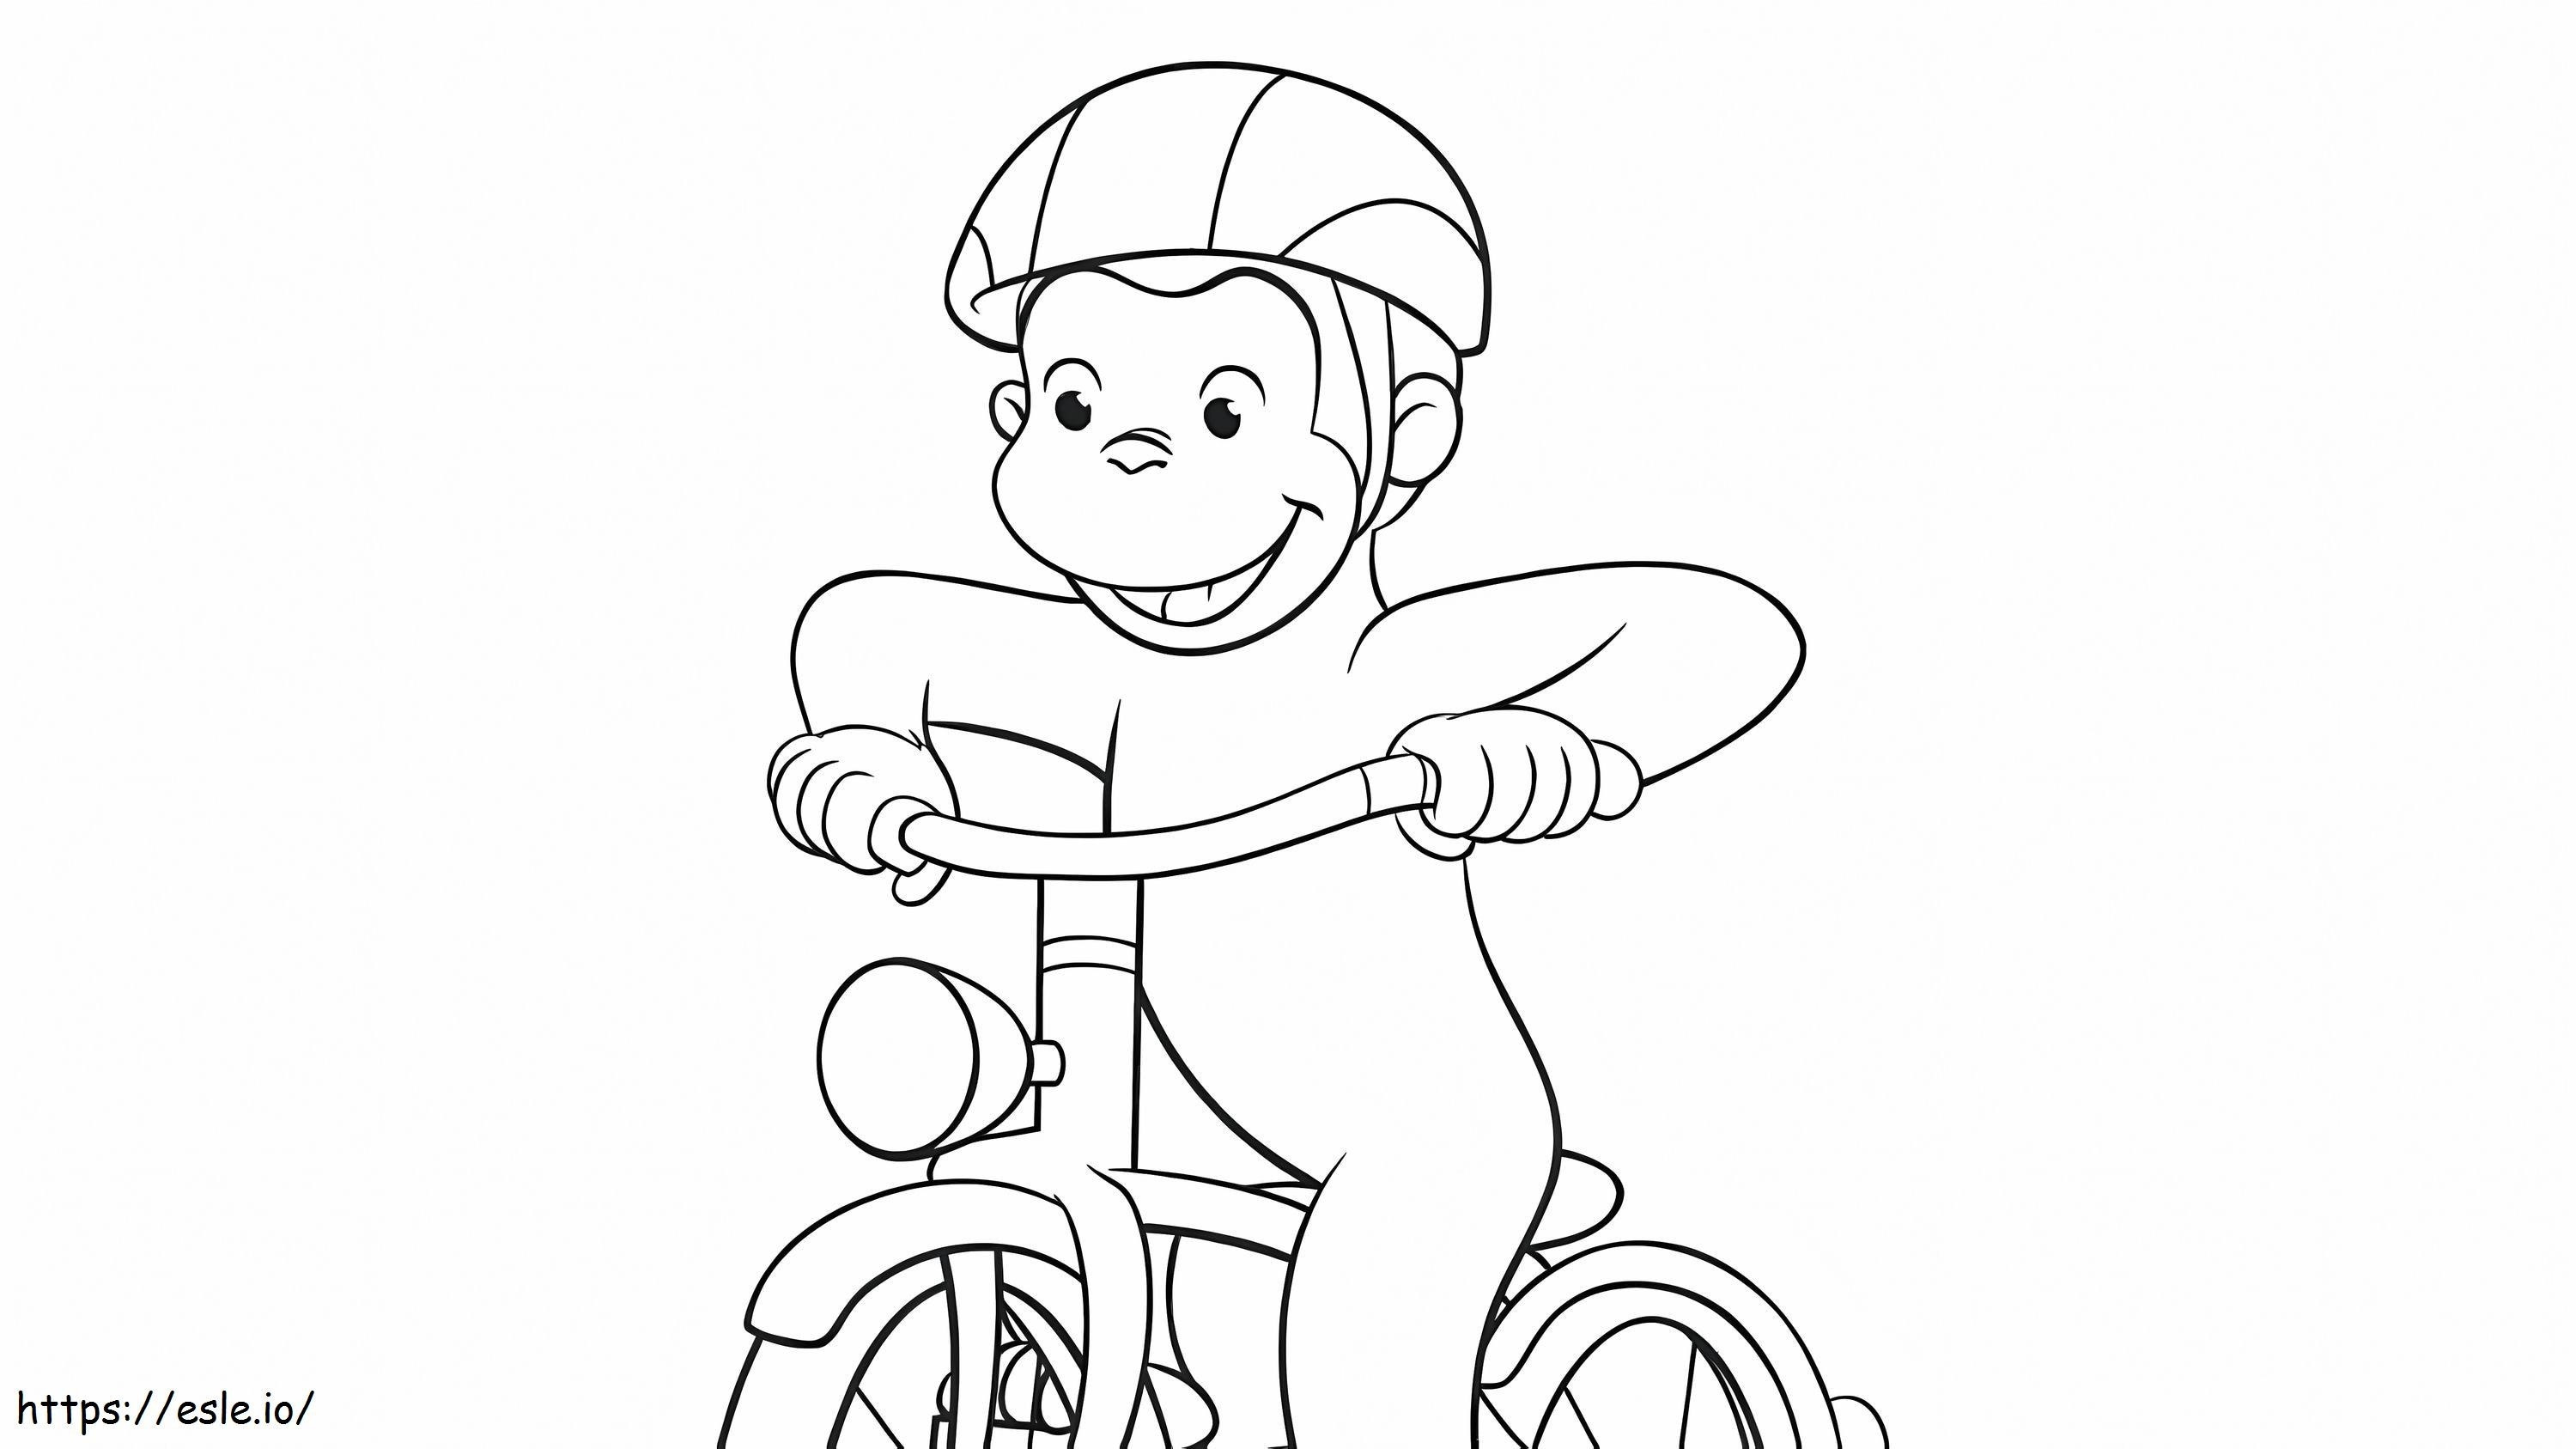 Mono ciclista da colorare